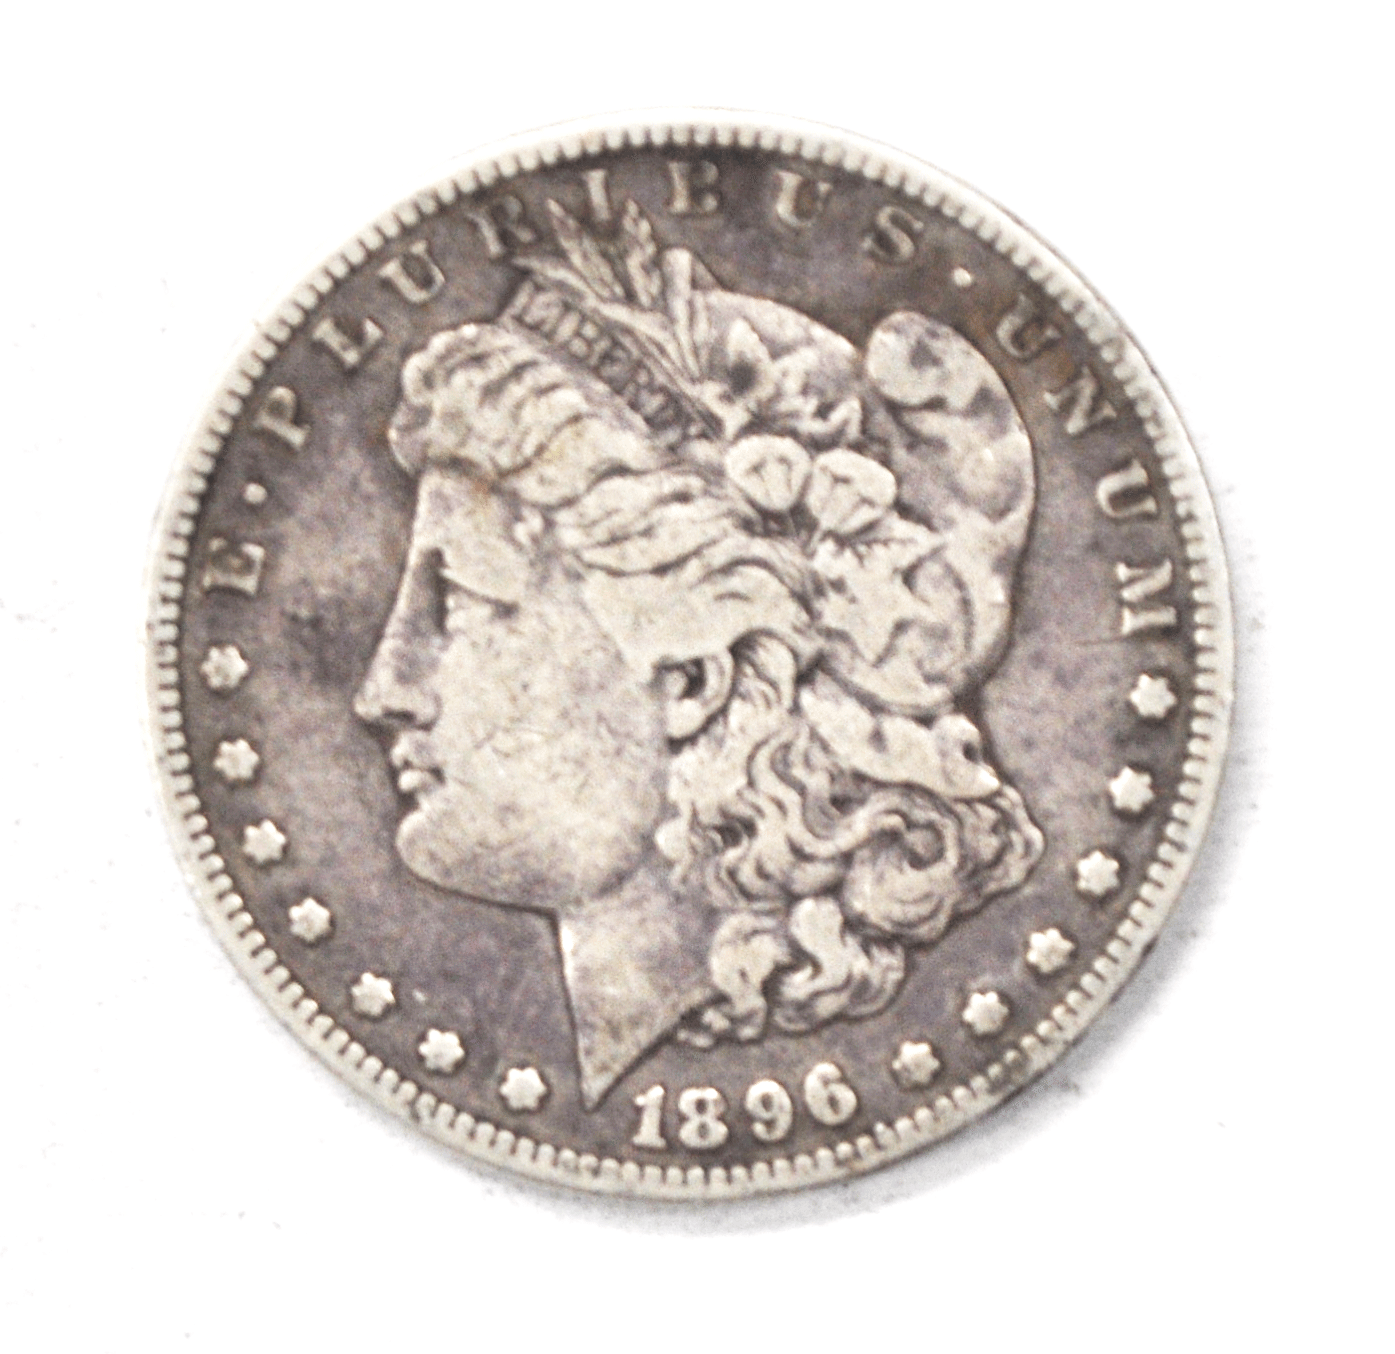 1896 S $1 Morgan Silver One Dollar US Coin San Francisco